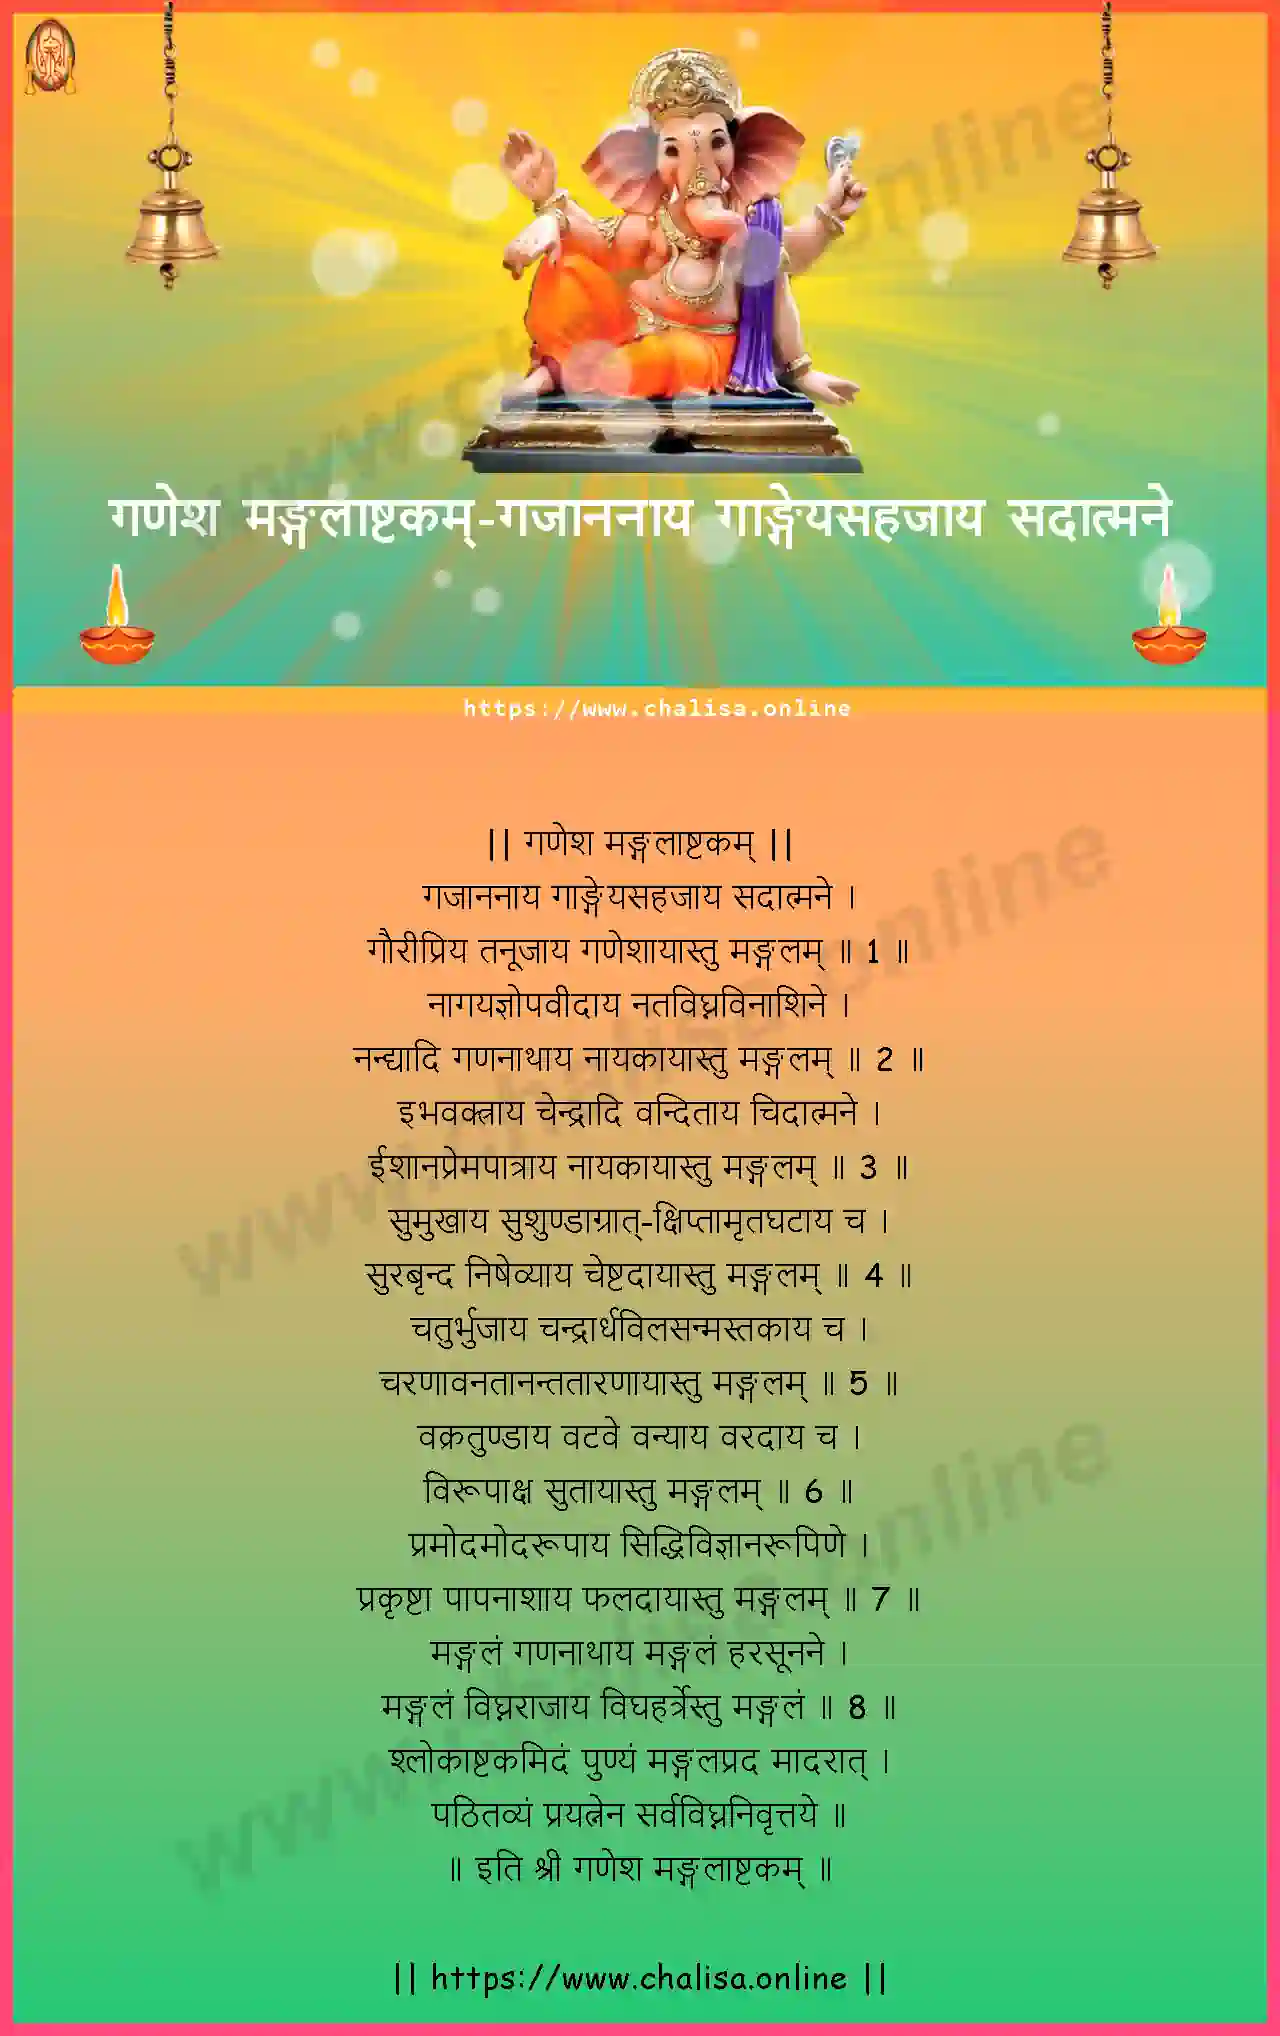 gajananaya-gangeyasahajaya-ganesha-mangalashtakam-sanskrit-sanskrit-lyrics-download